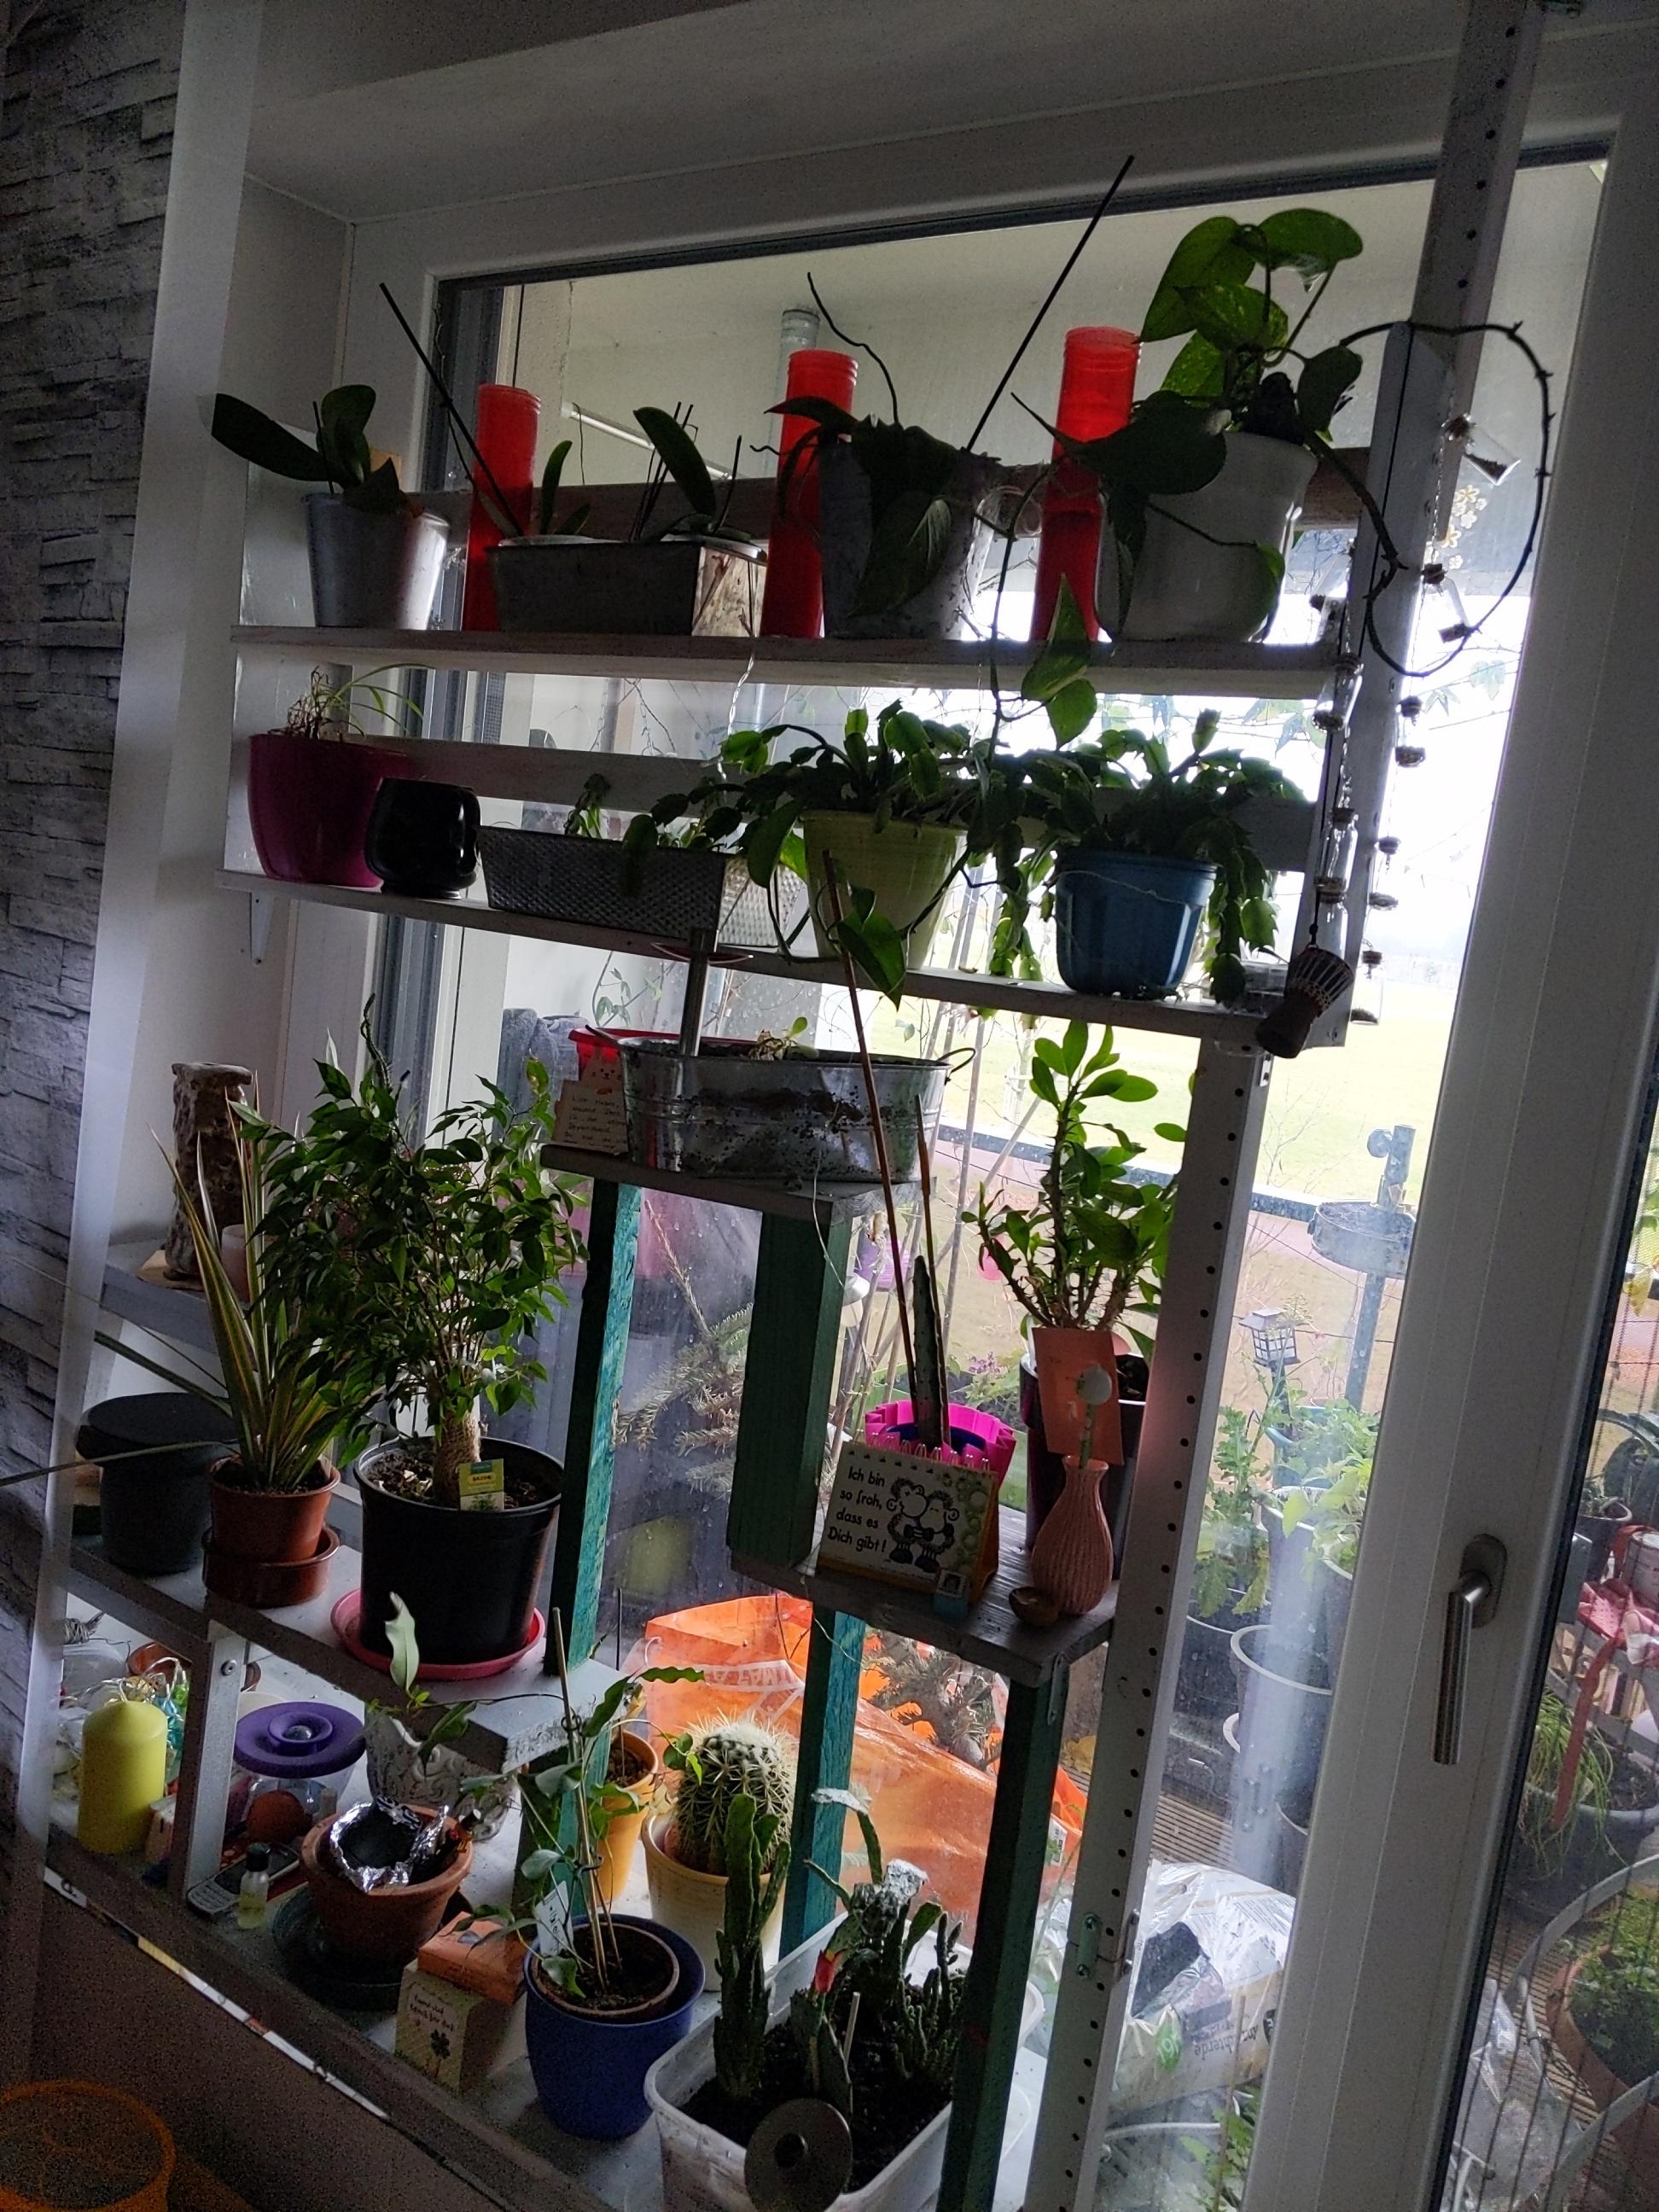 #livingchallenge #lieblingsraum
Mein Wohnzimmer, wegen meines Pflanzenfensters